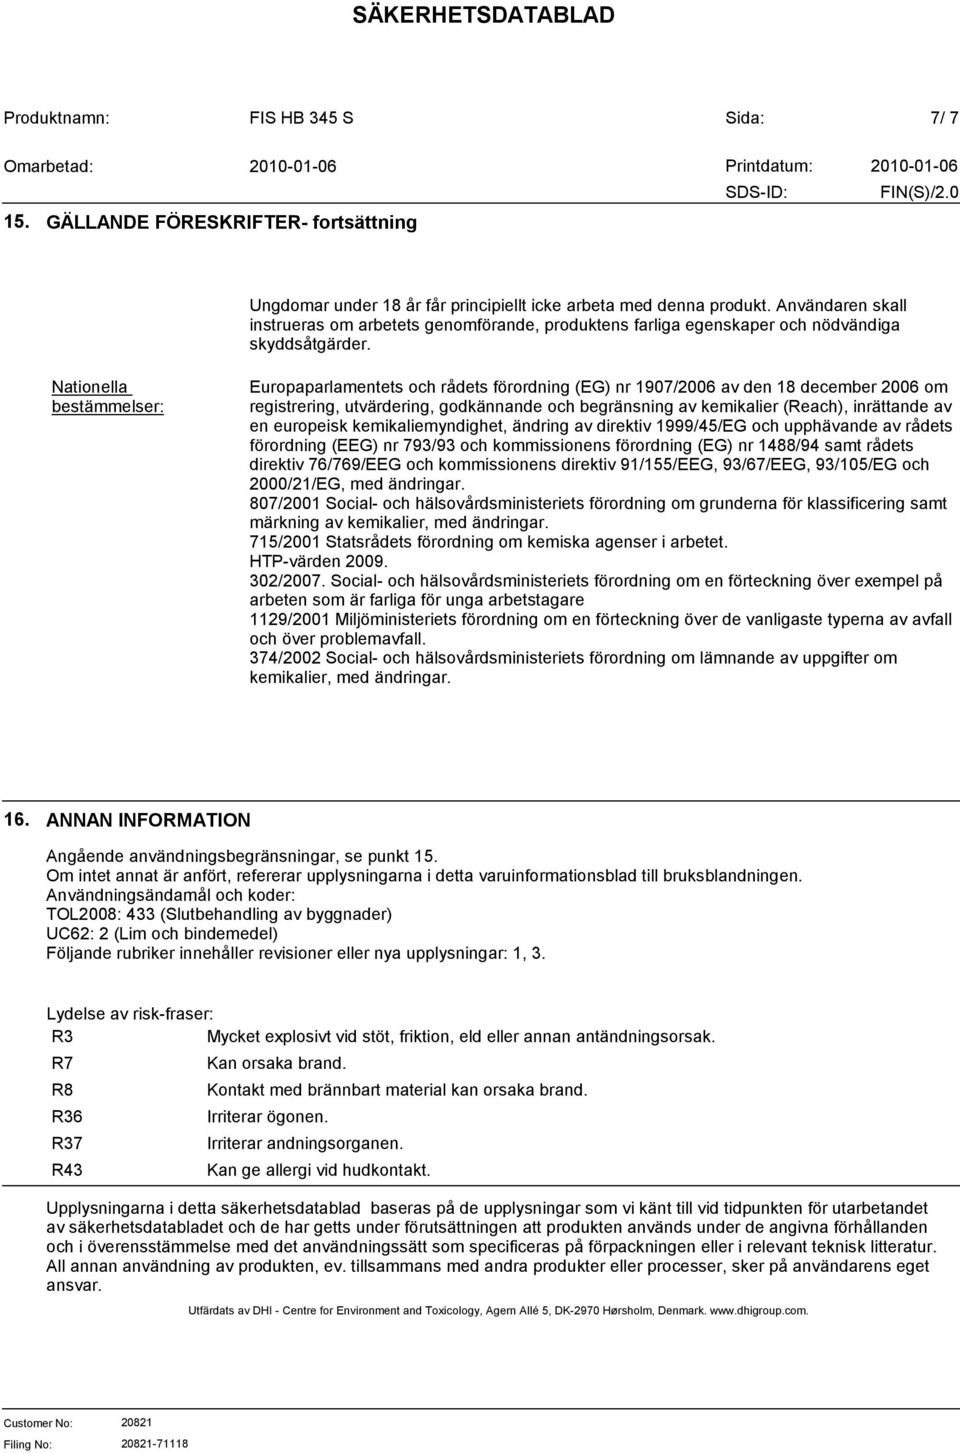 Nationella bestämmelser: Europaparlamentets och rådets förordning (EG) nr 1907/2006 av den 18 december 2006 om registrering, utvärdering, godkännande och begränsning av kemikalier (Reach), inrättande